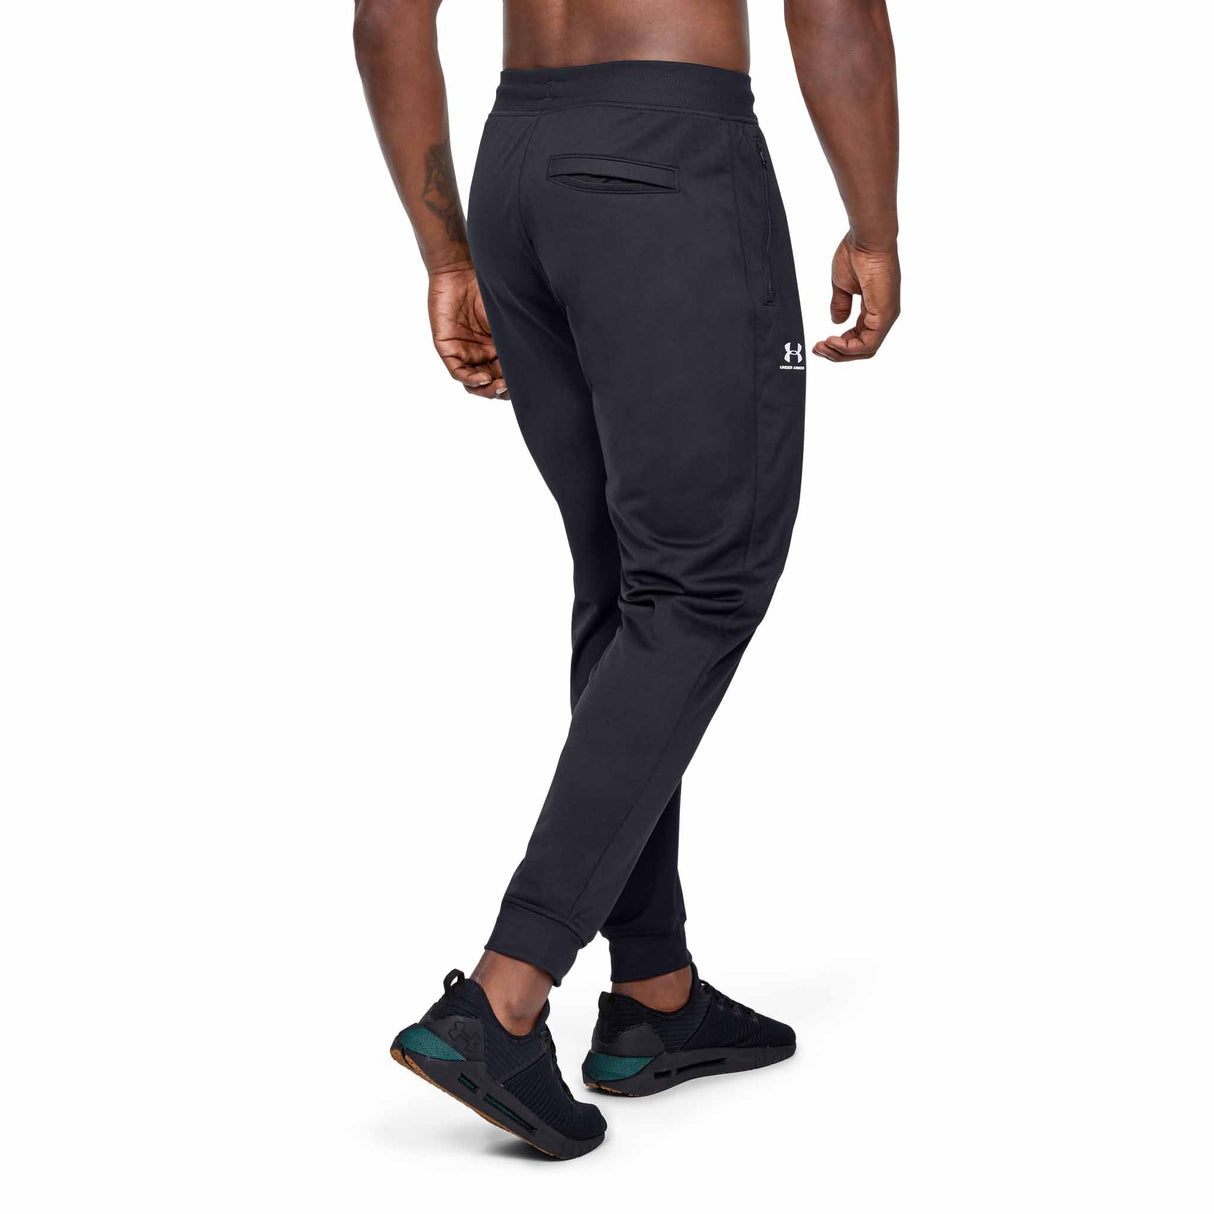 UA Sportstyle pantalon de jogging homme dos live- noir